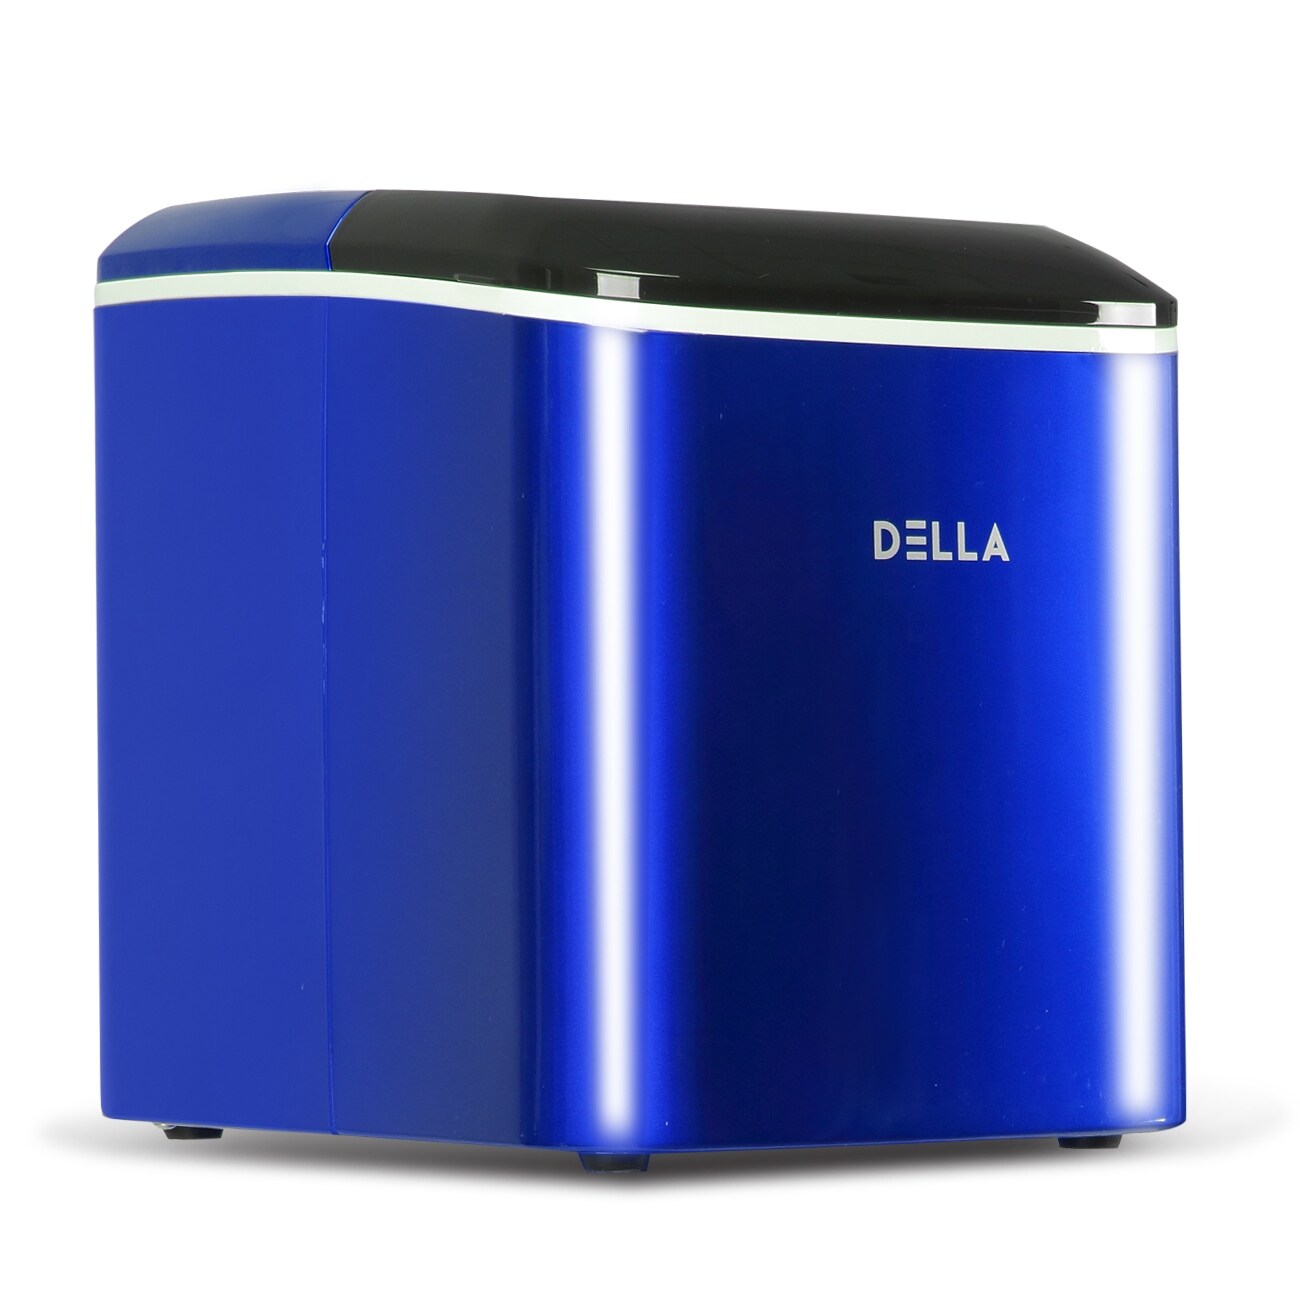 DELLA Compact Ice Maker Machine Freestanding Ice Cube, Blue